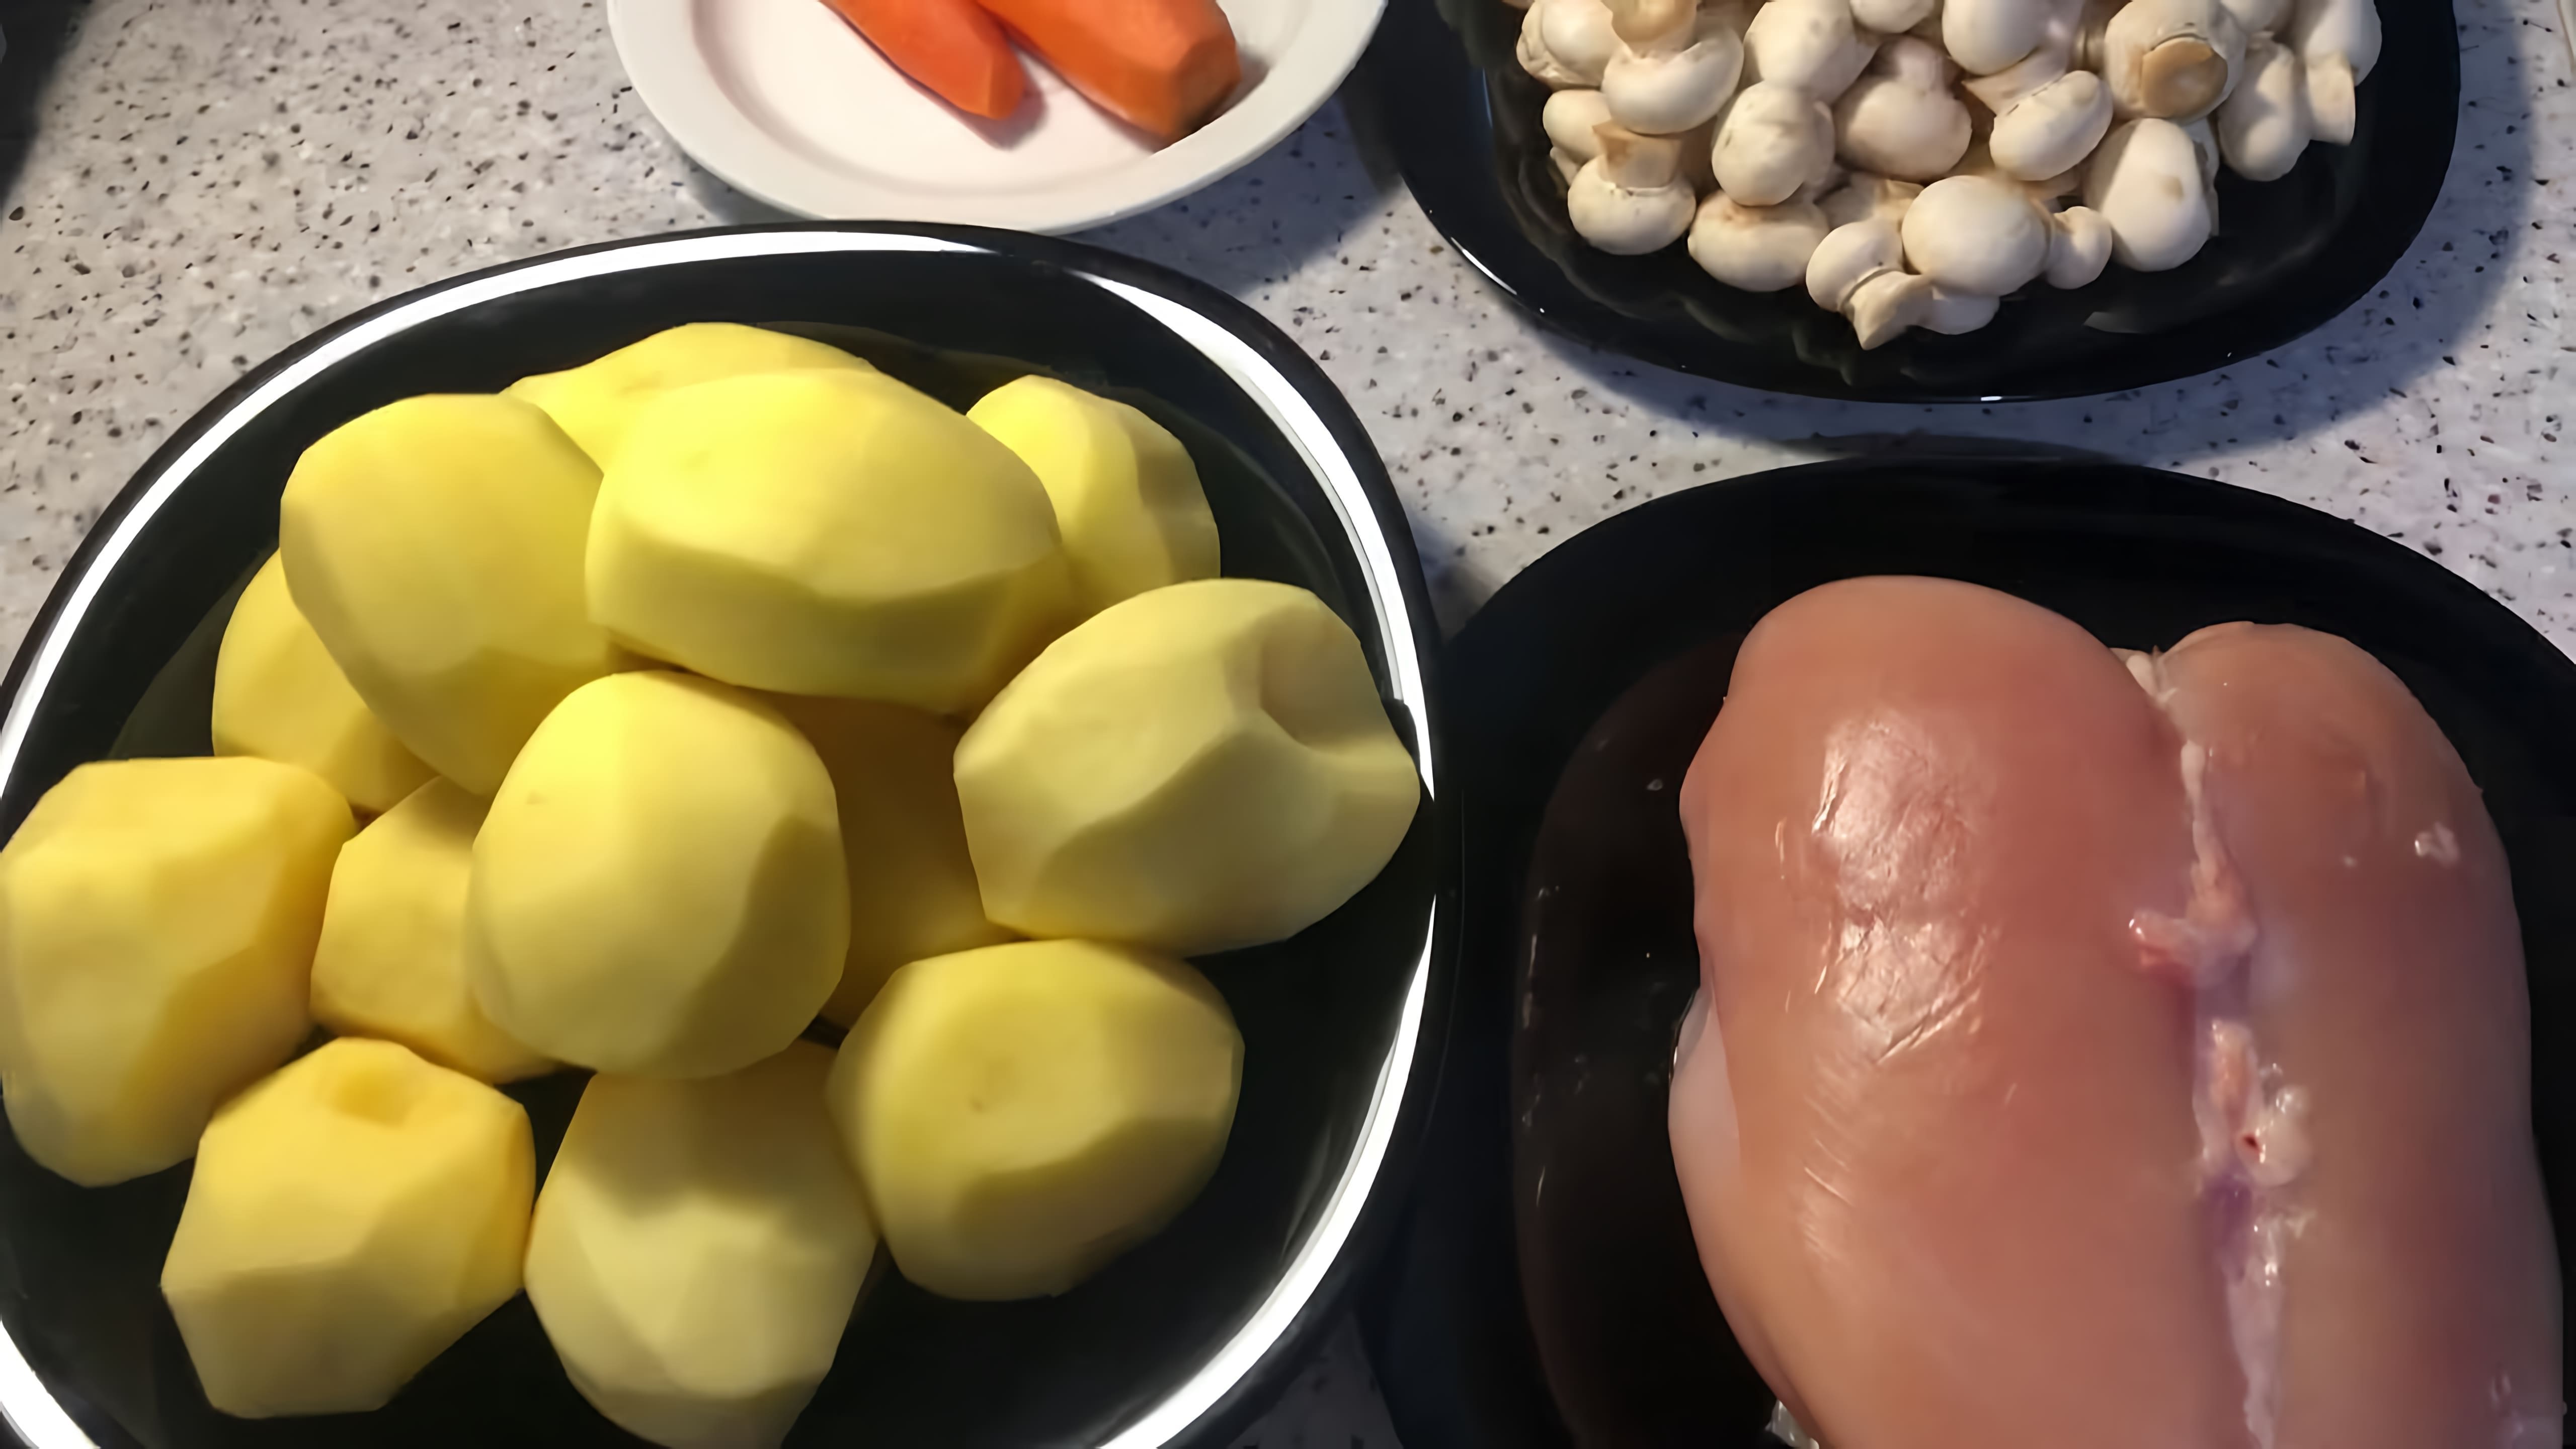 Видео рецепт бомбастического блюда из картофеля, грибов и курицы в горшке